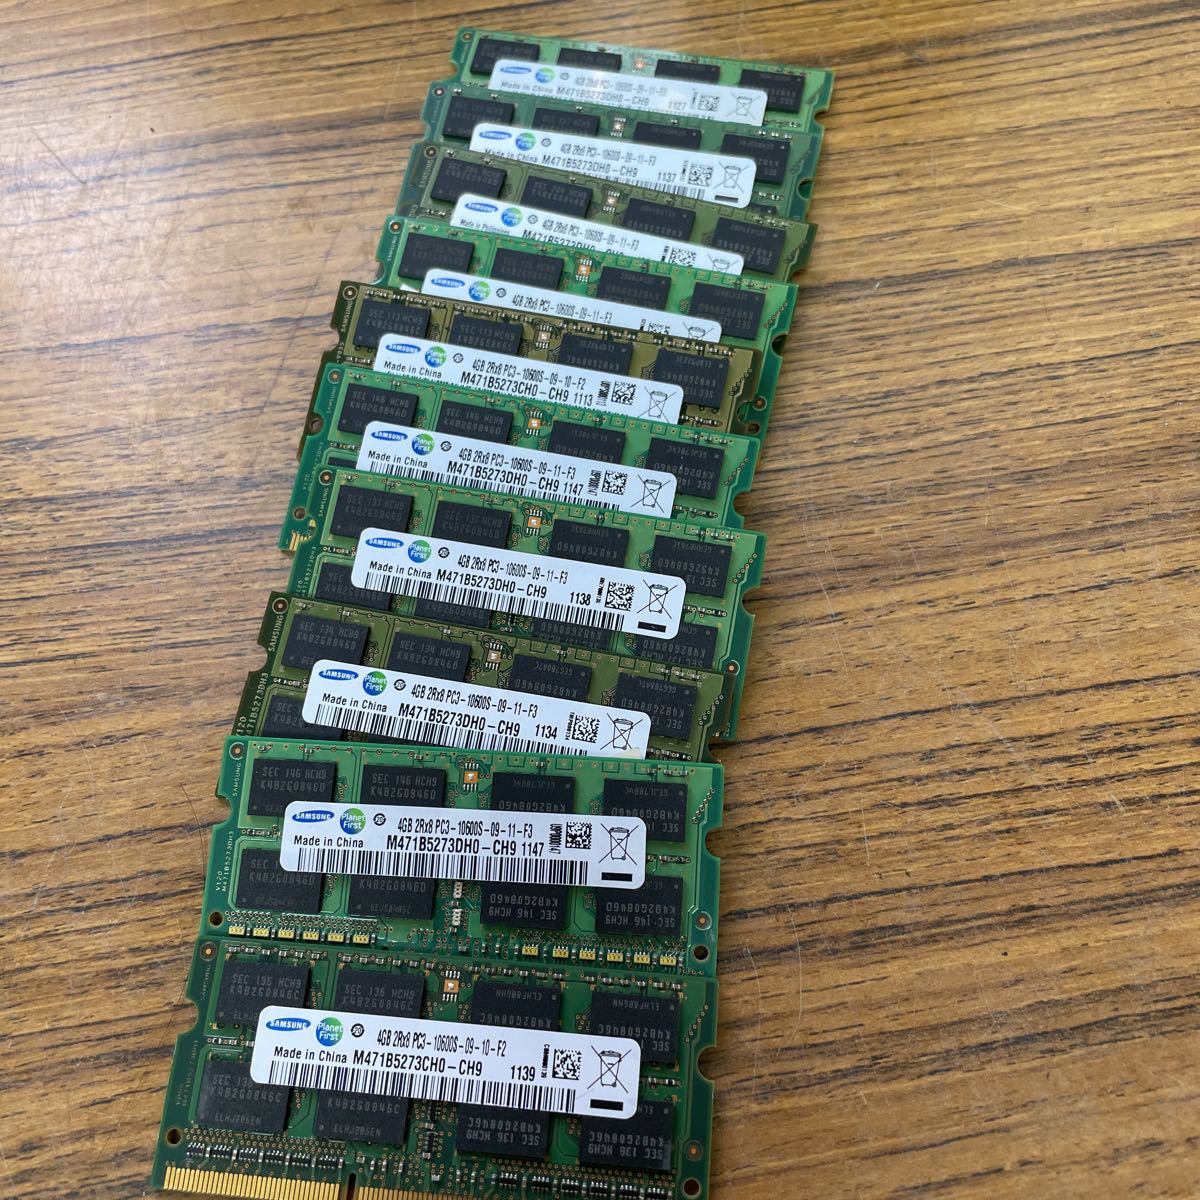 即出荷 超激得SALE SAMSUNG ノートPC メモリ4GB 2Rx8 PC3-10600S 10枚セット t669.org t669.org